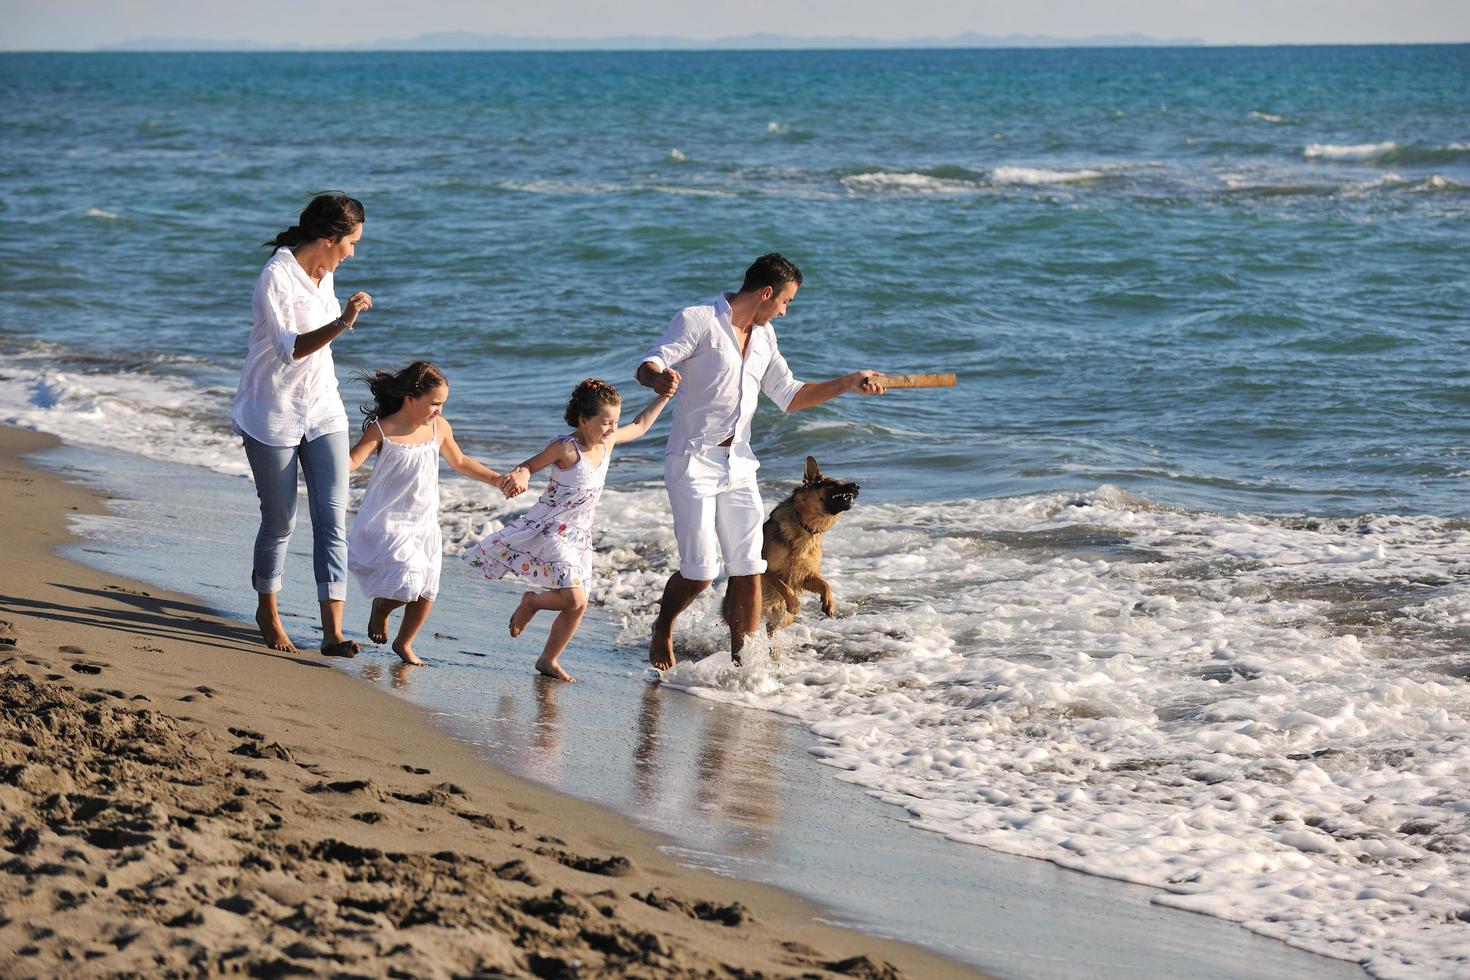 famille heureuse jouant avec un chien sur la plage photo